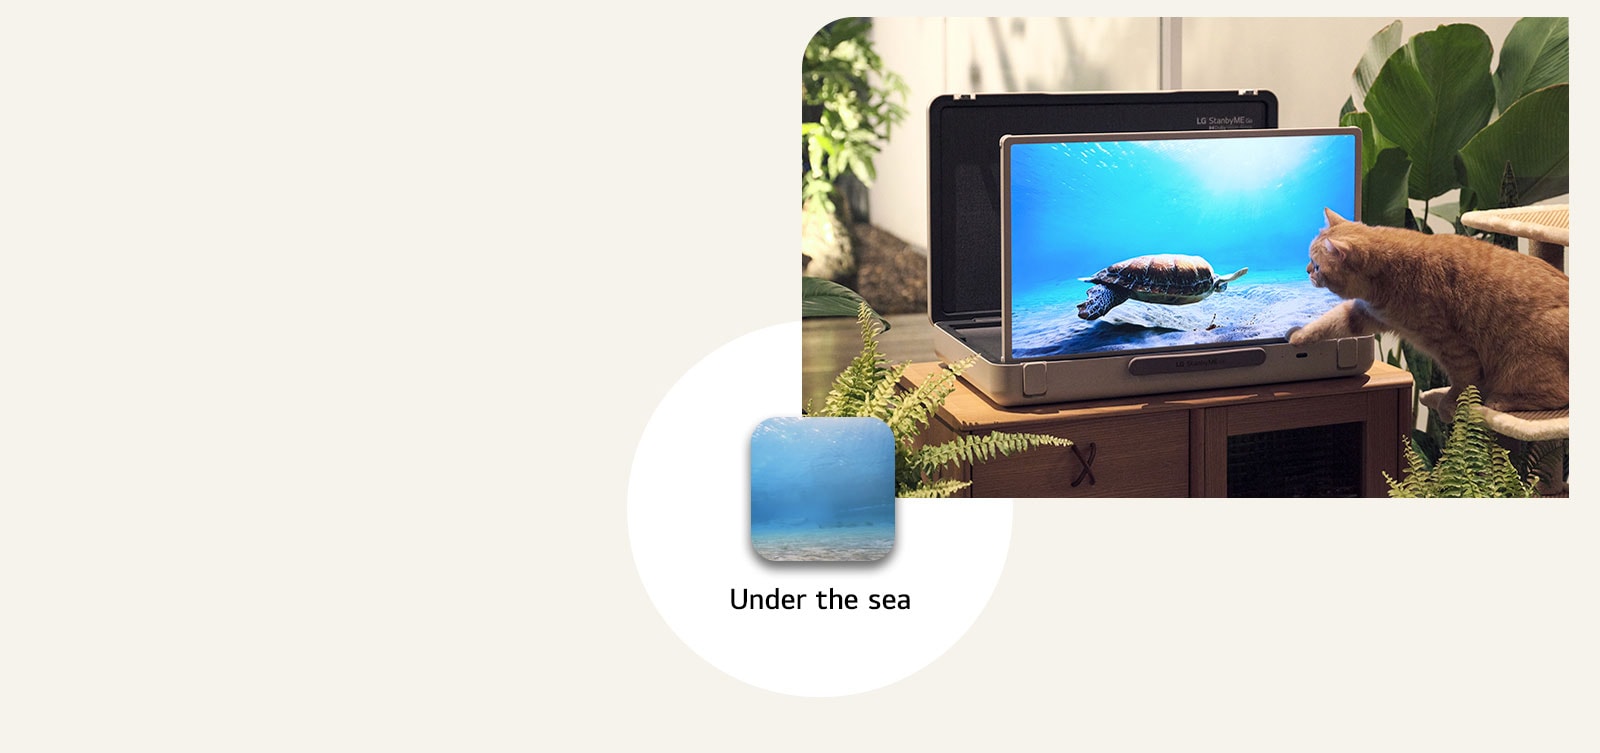 El LG StanbyME Go está colocado en el jardín y la pantalla muestra debajo del mar. Frente a la pantalla, un gato está sentado en un taburete, tratando de atrapar una tortuga en la pantalla.